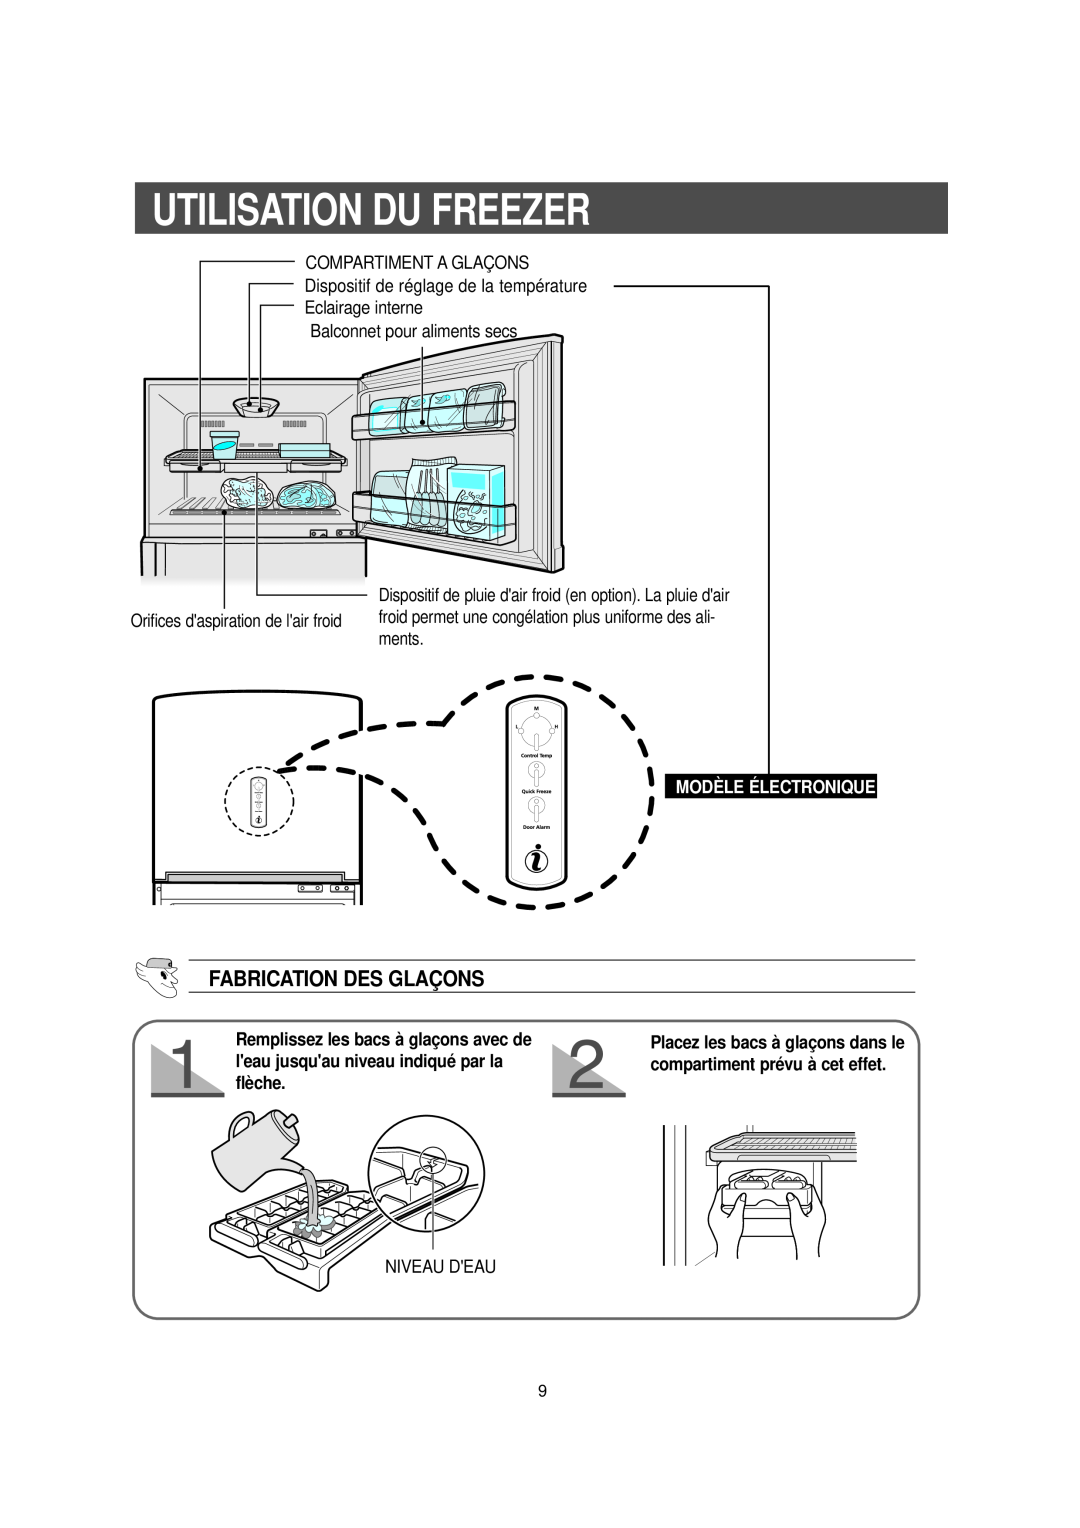 Samsung DA99-00477C manual Utilisation Du Freezer, Fabrication Des Glaçons, Modèle Électronique 